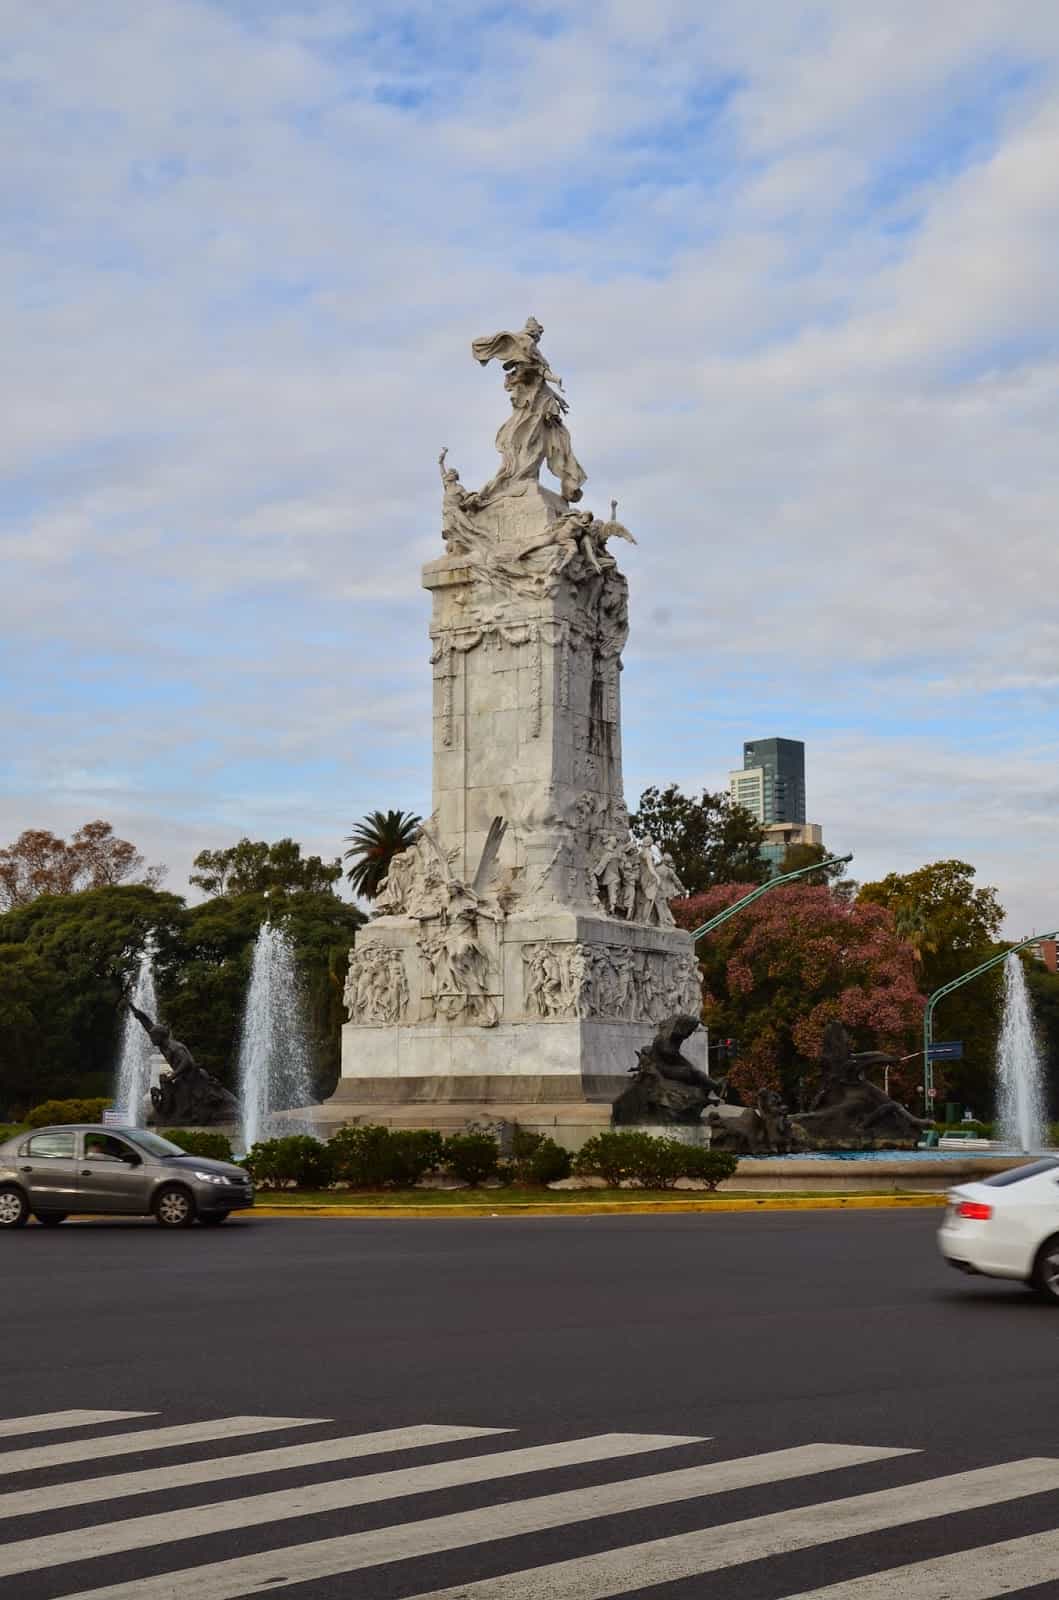 Monumento de los Españoles in Palermo, Buenos Aires, Argentina